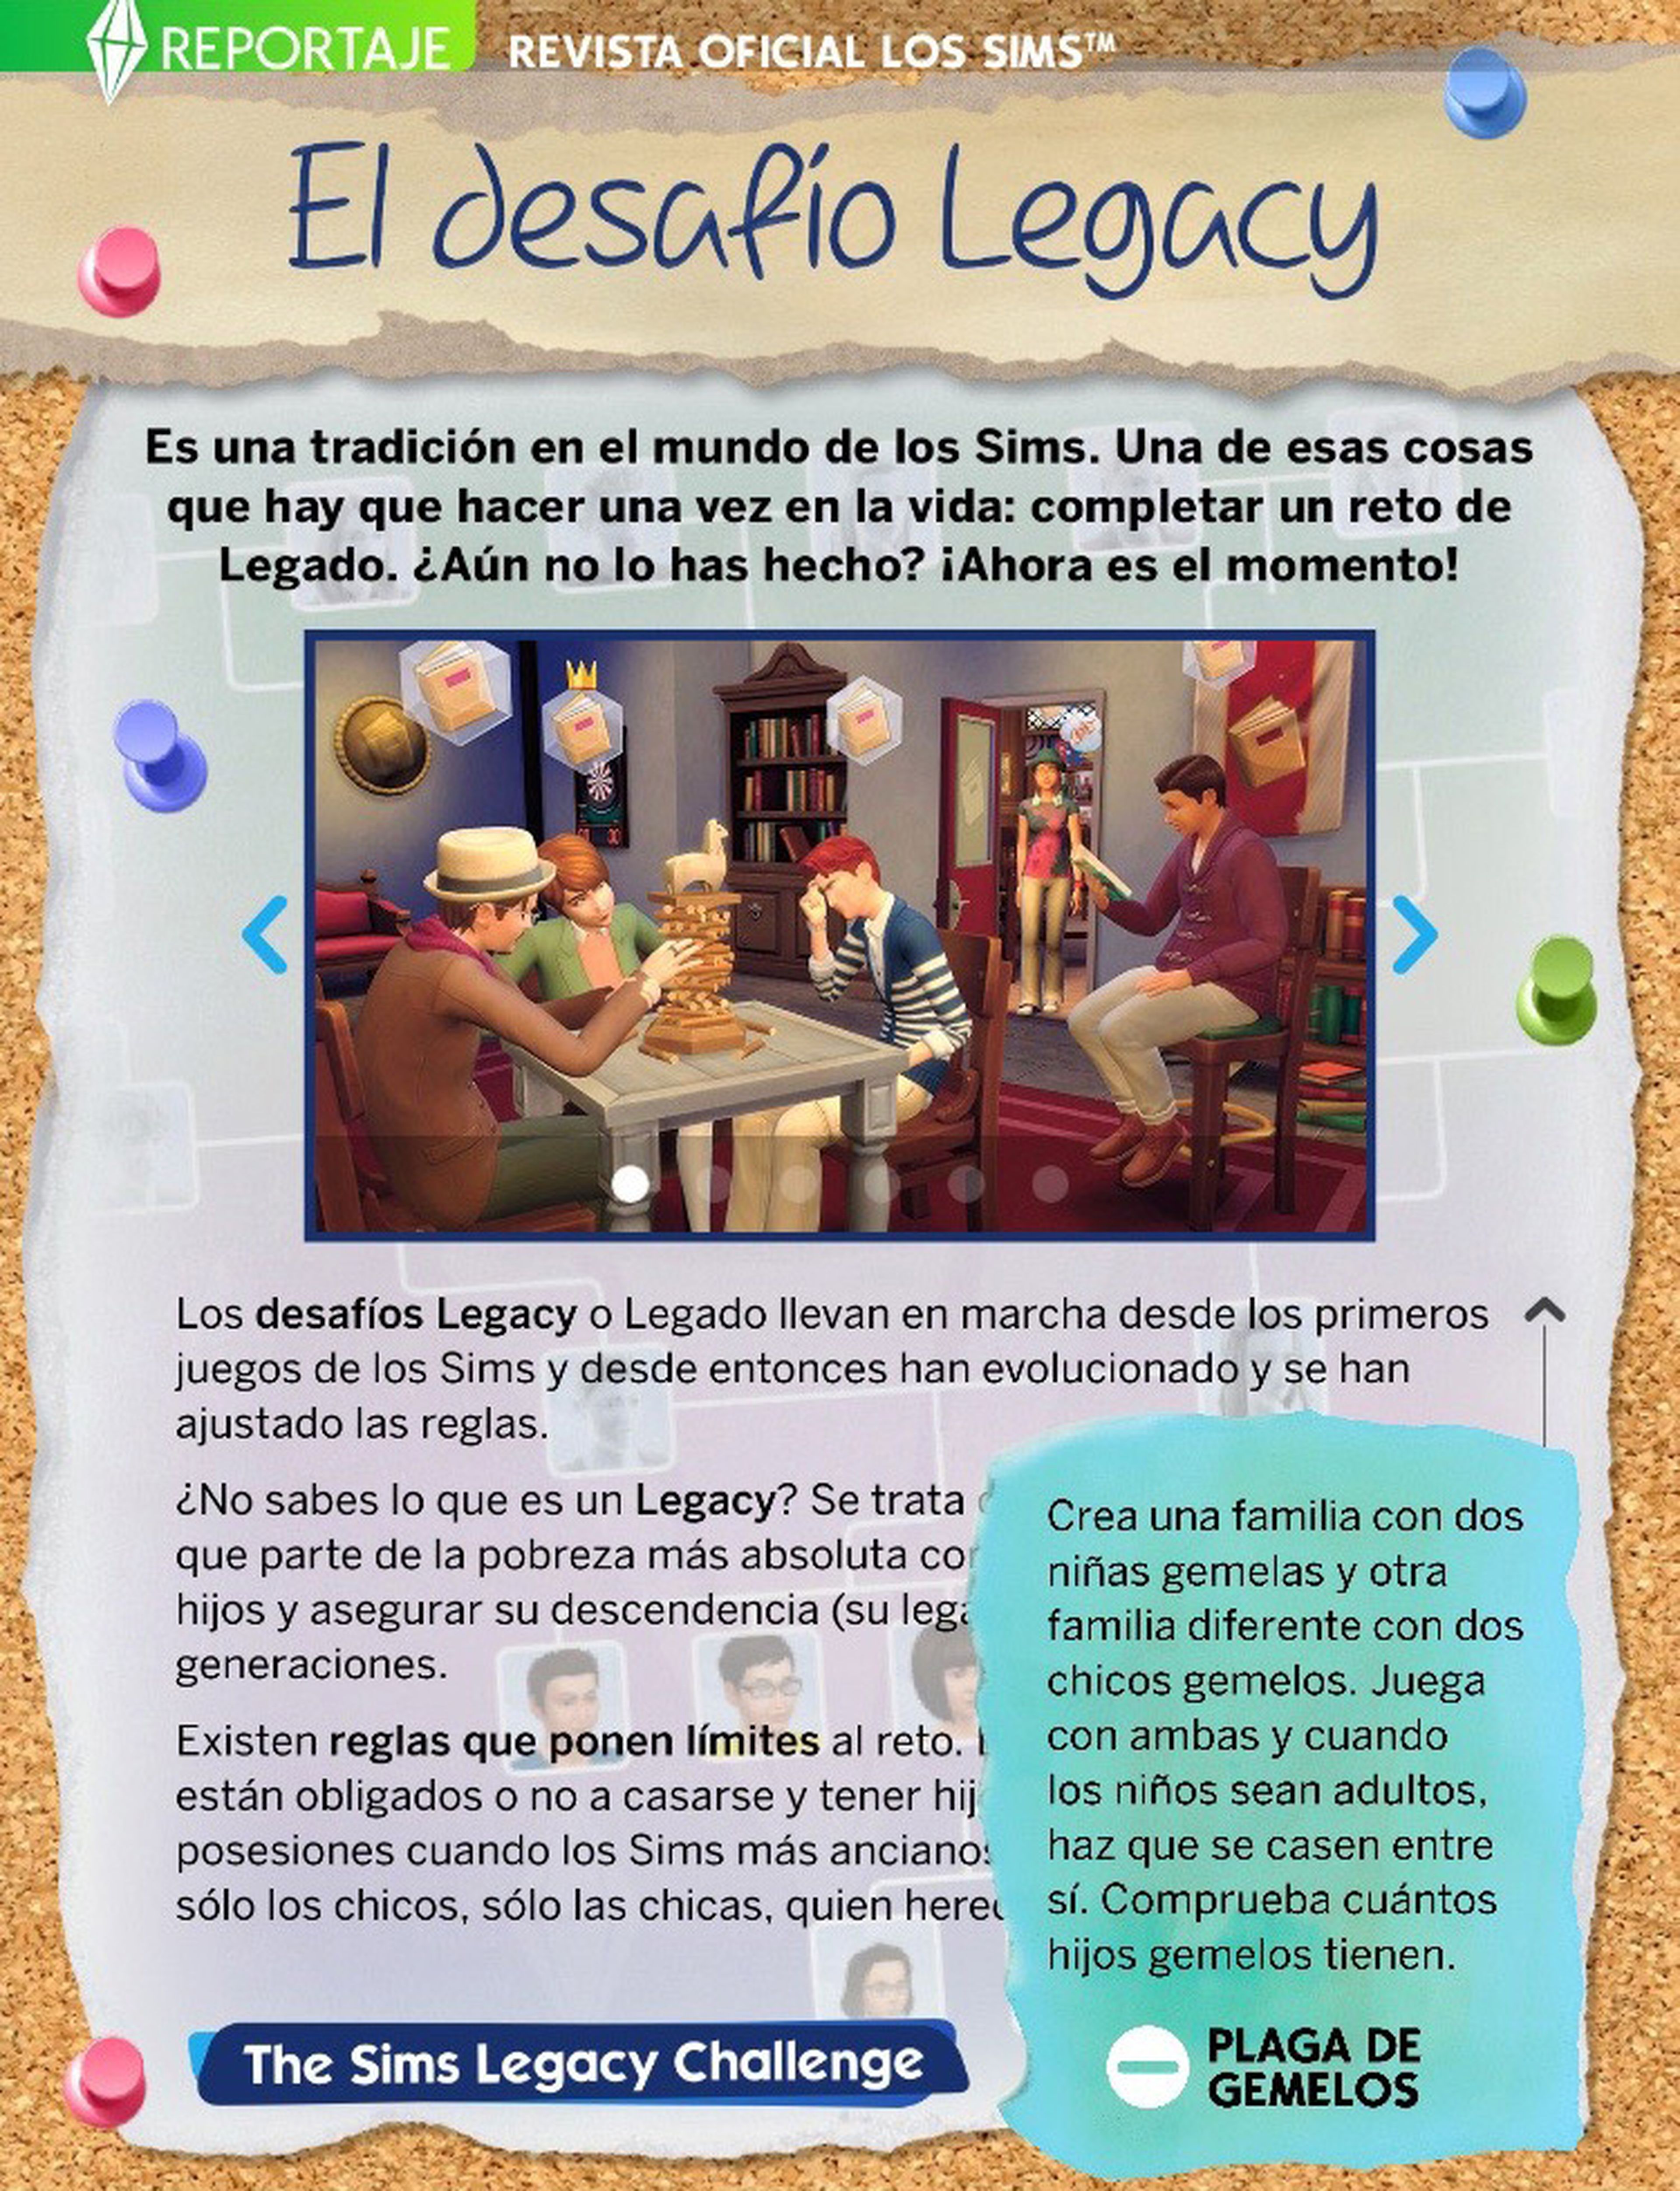 ¡Ya puedes descargar gratis el número 22 de La Revista Oficial Los Sims!